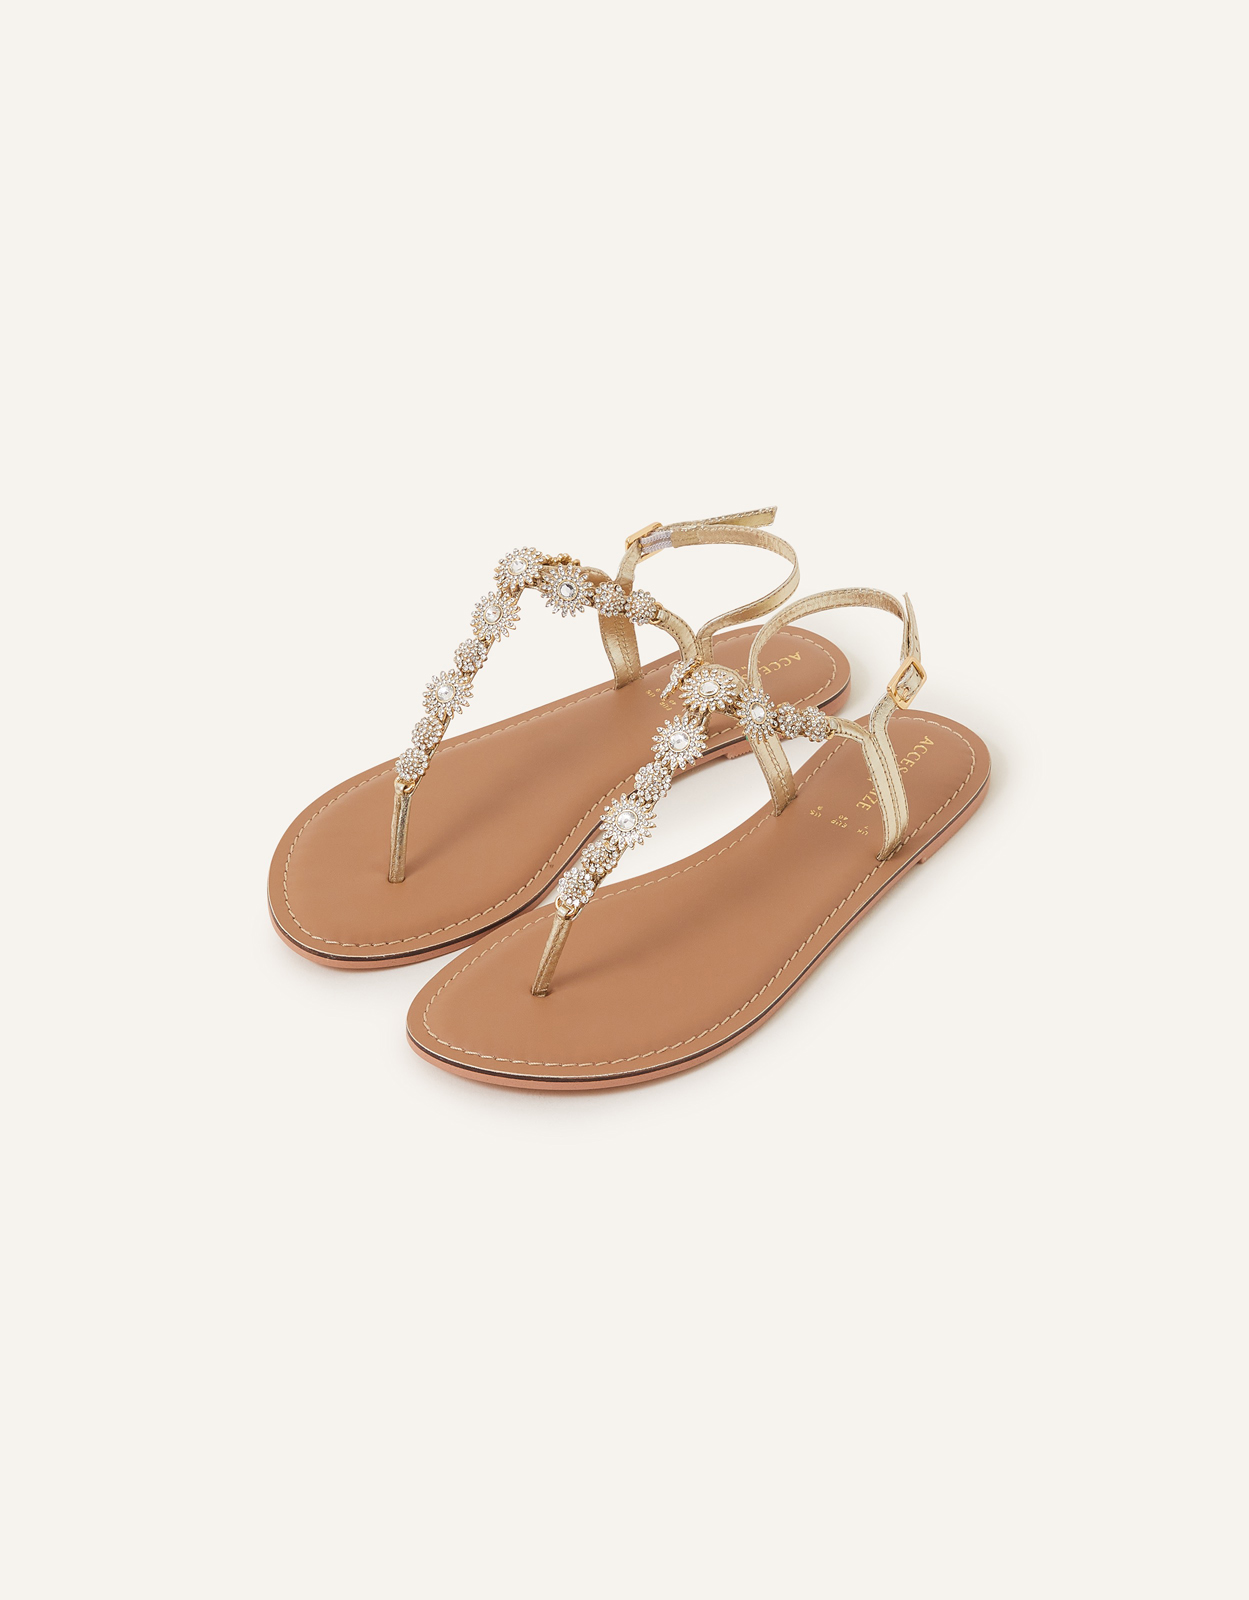 Accessorize Women's Rome Sparkle Sandals Gold, Size: 36